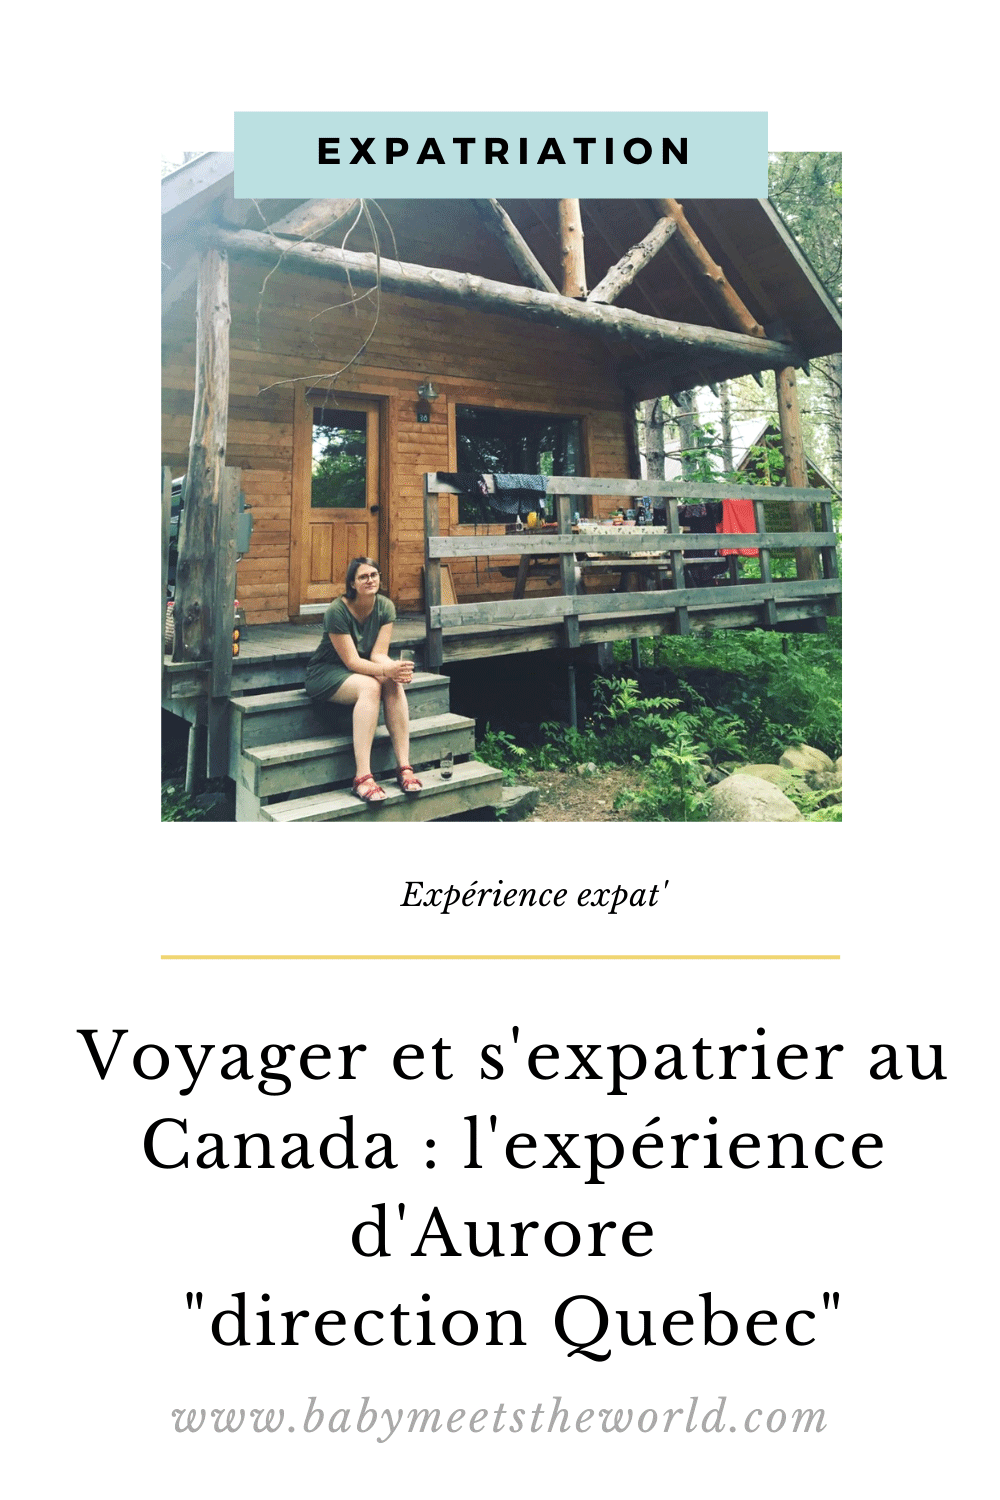 Voyager-et-s'expatrier-au-Canada---l'expérience-d'Aurore-'direction-Quebec'6